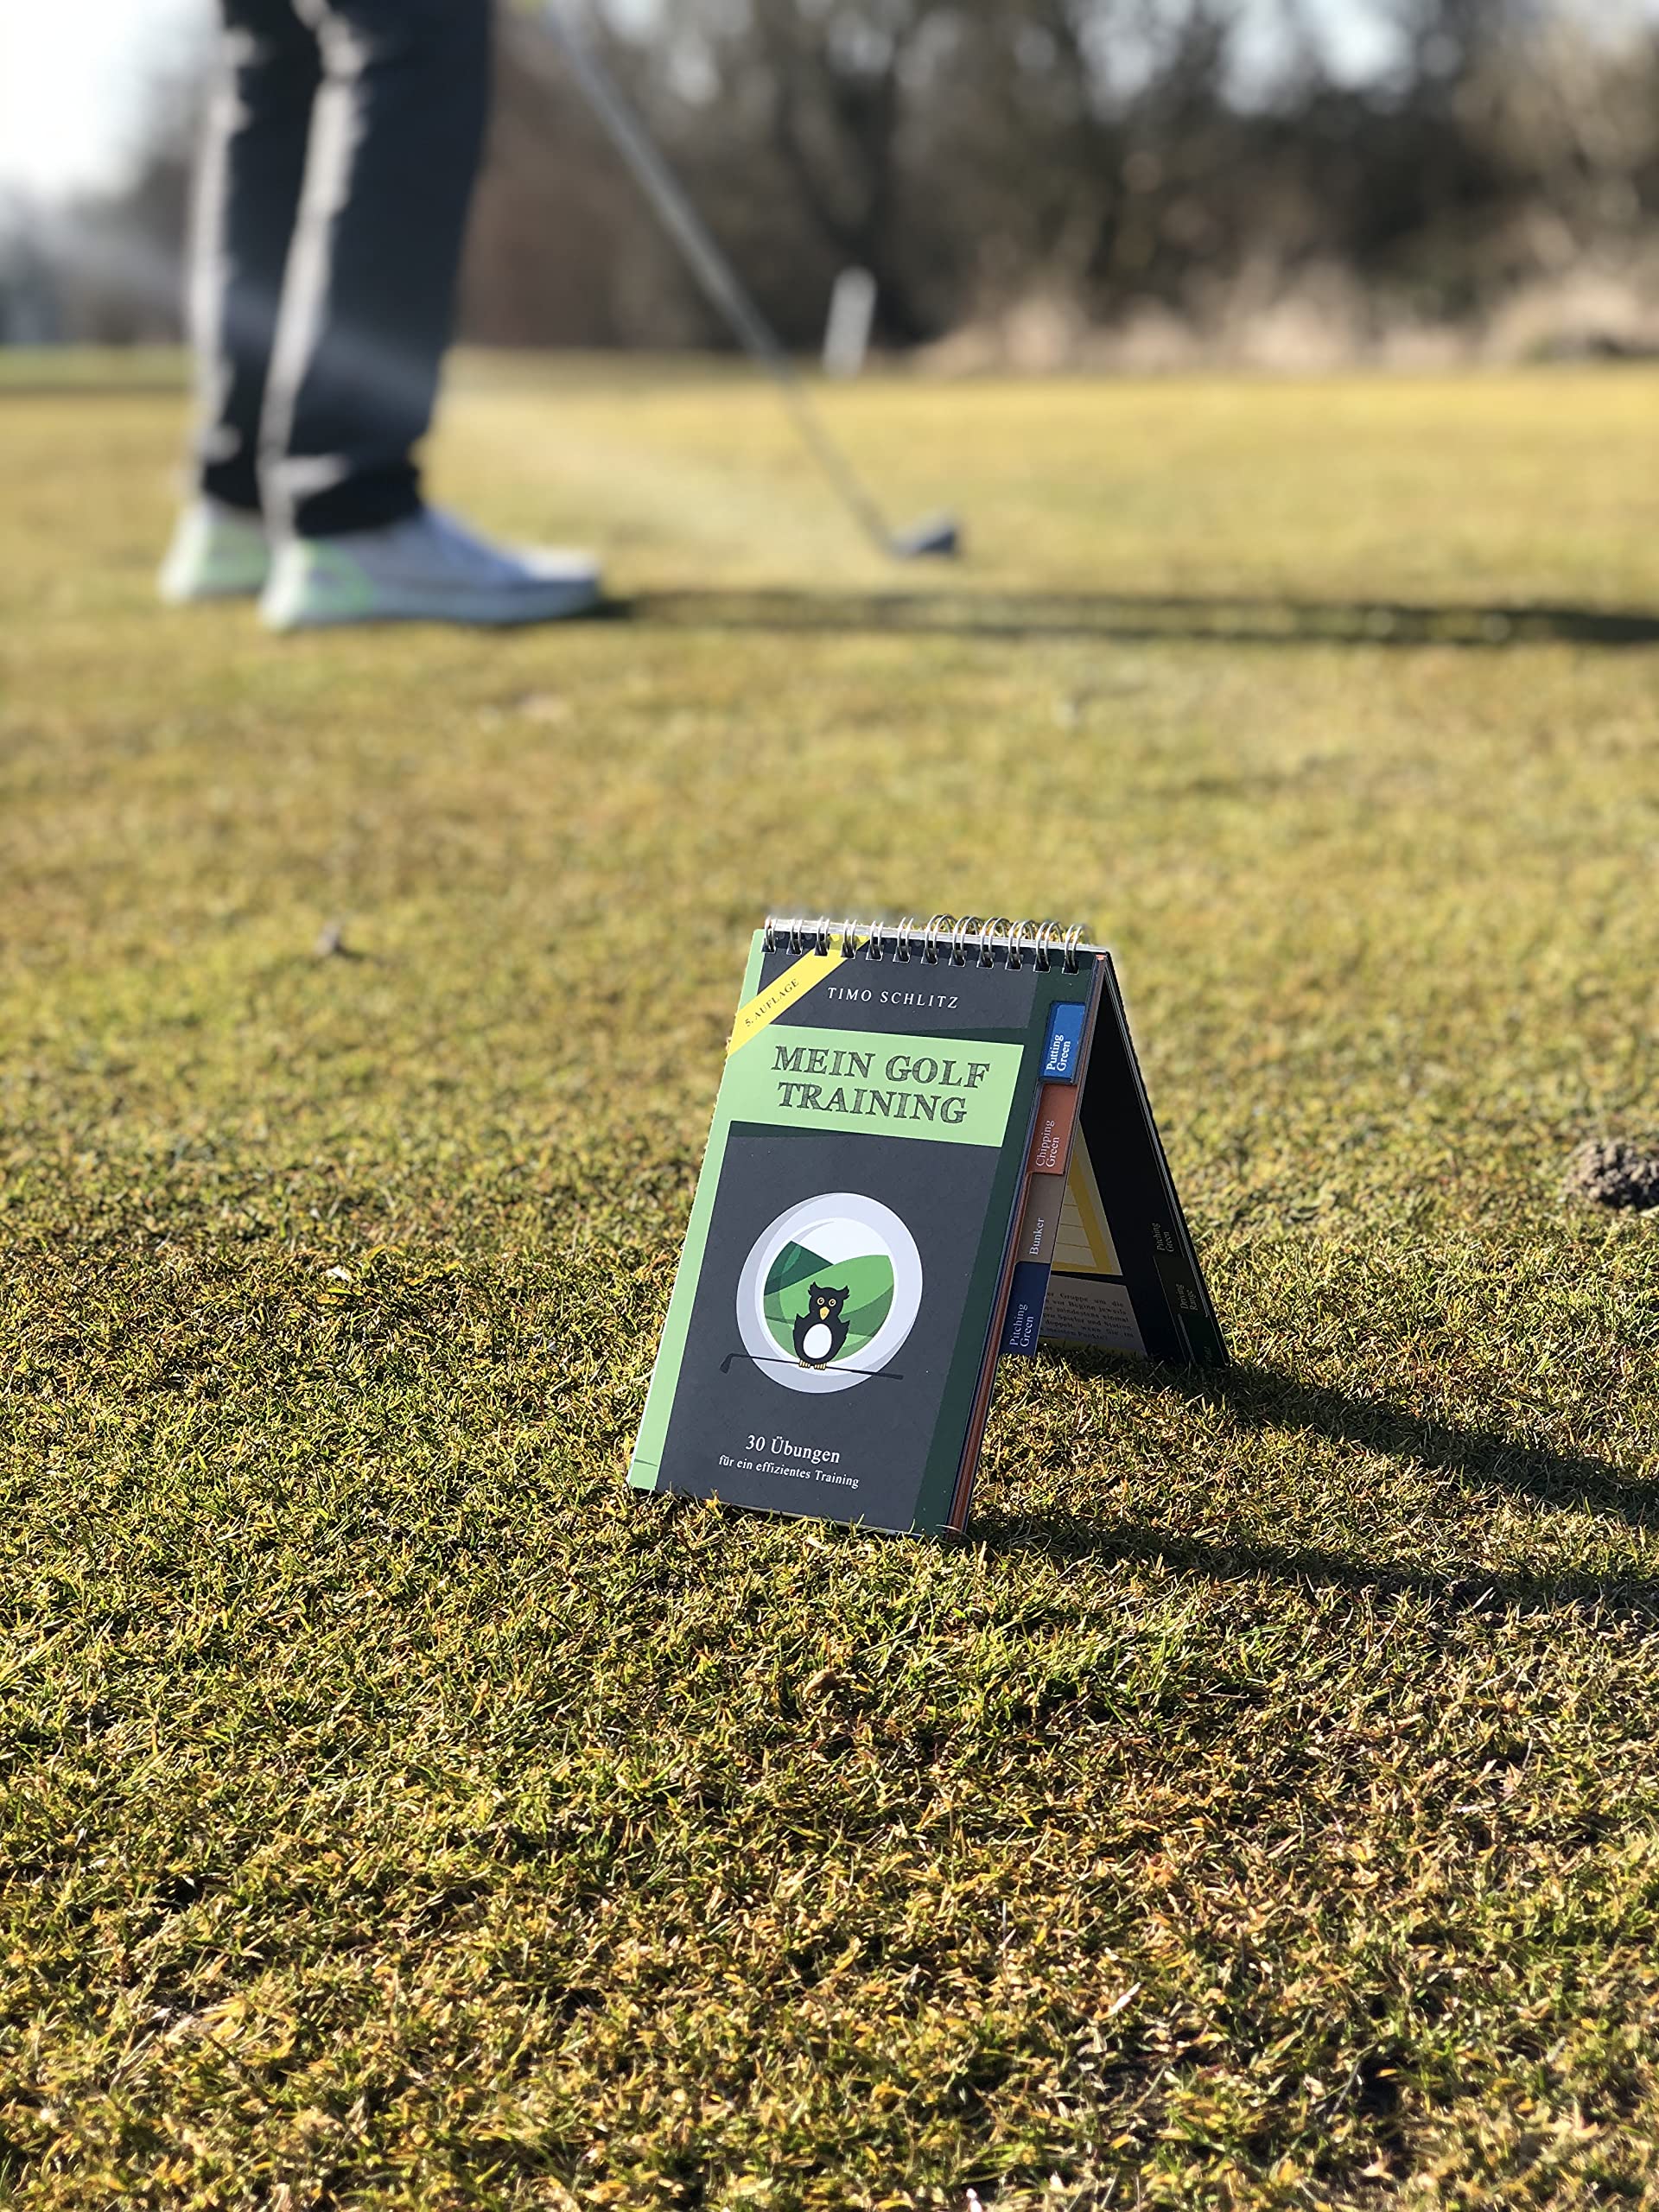 All Square Verlag Mein Golf Training: 30 Übungen für effektives Training | Booklet mit Drills für das Golf-Bag | Situative Übungen für Short Game und Driving Range